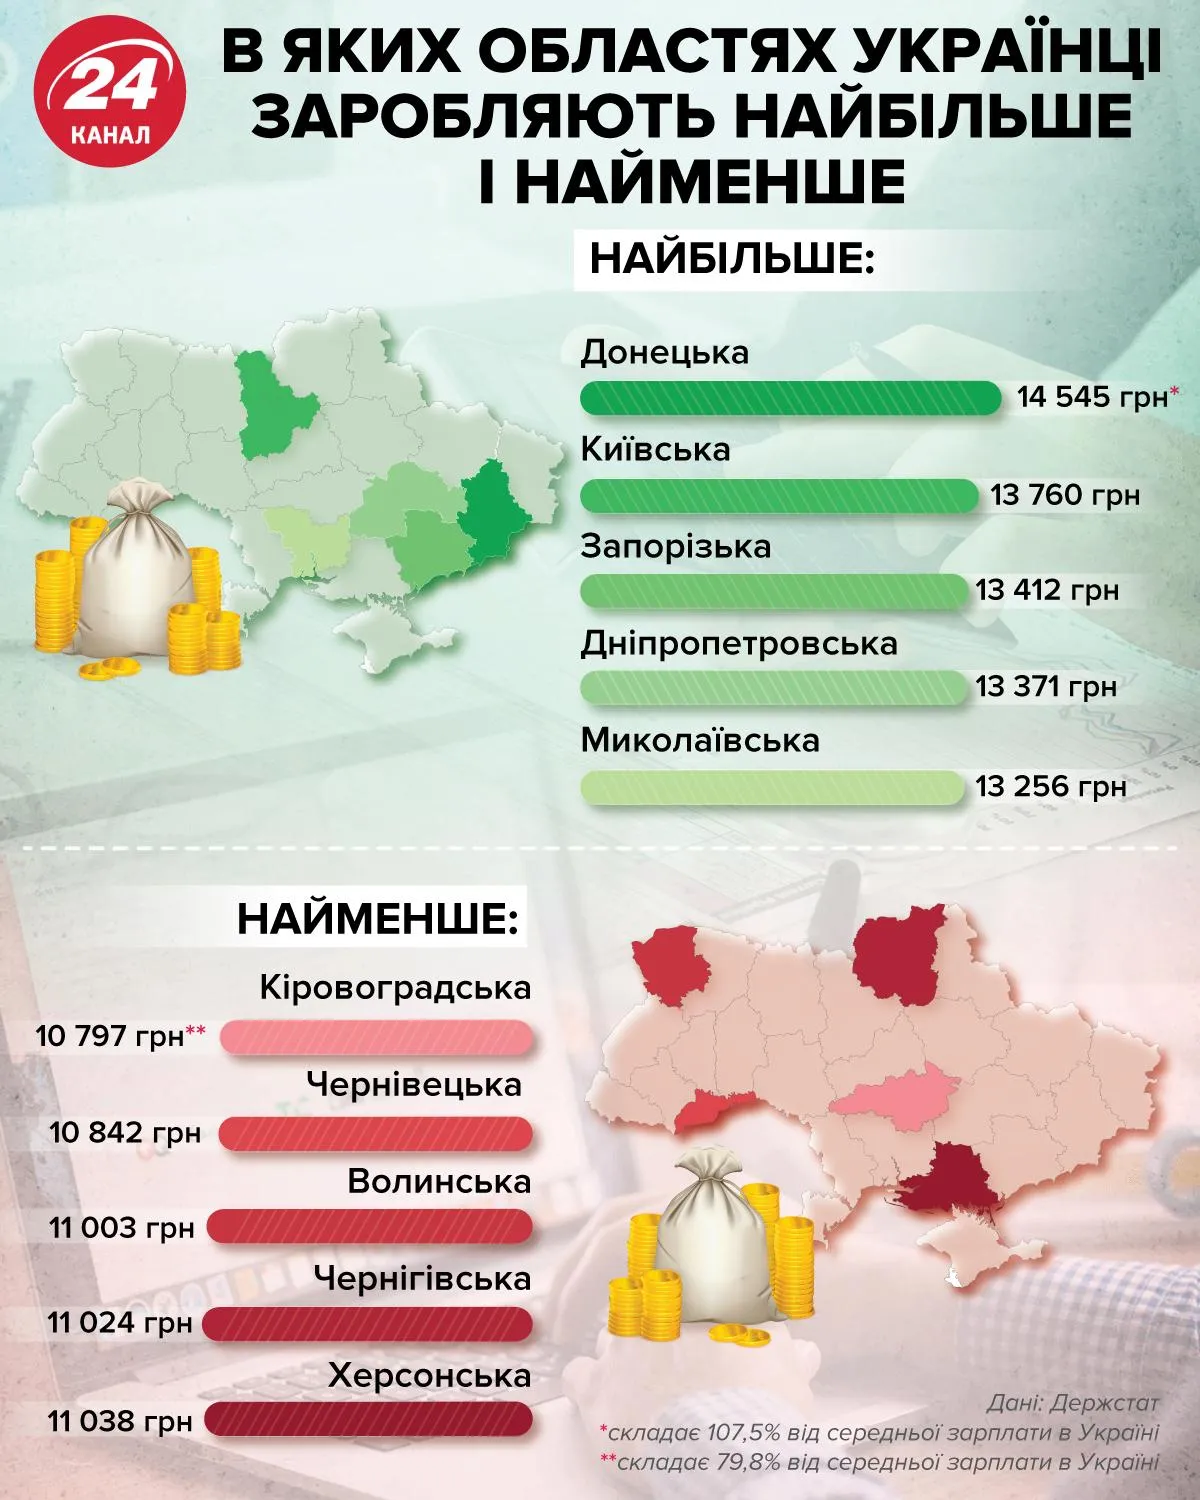 зарплати в областях україни